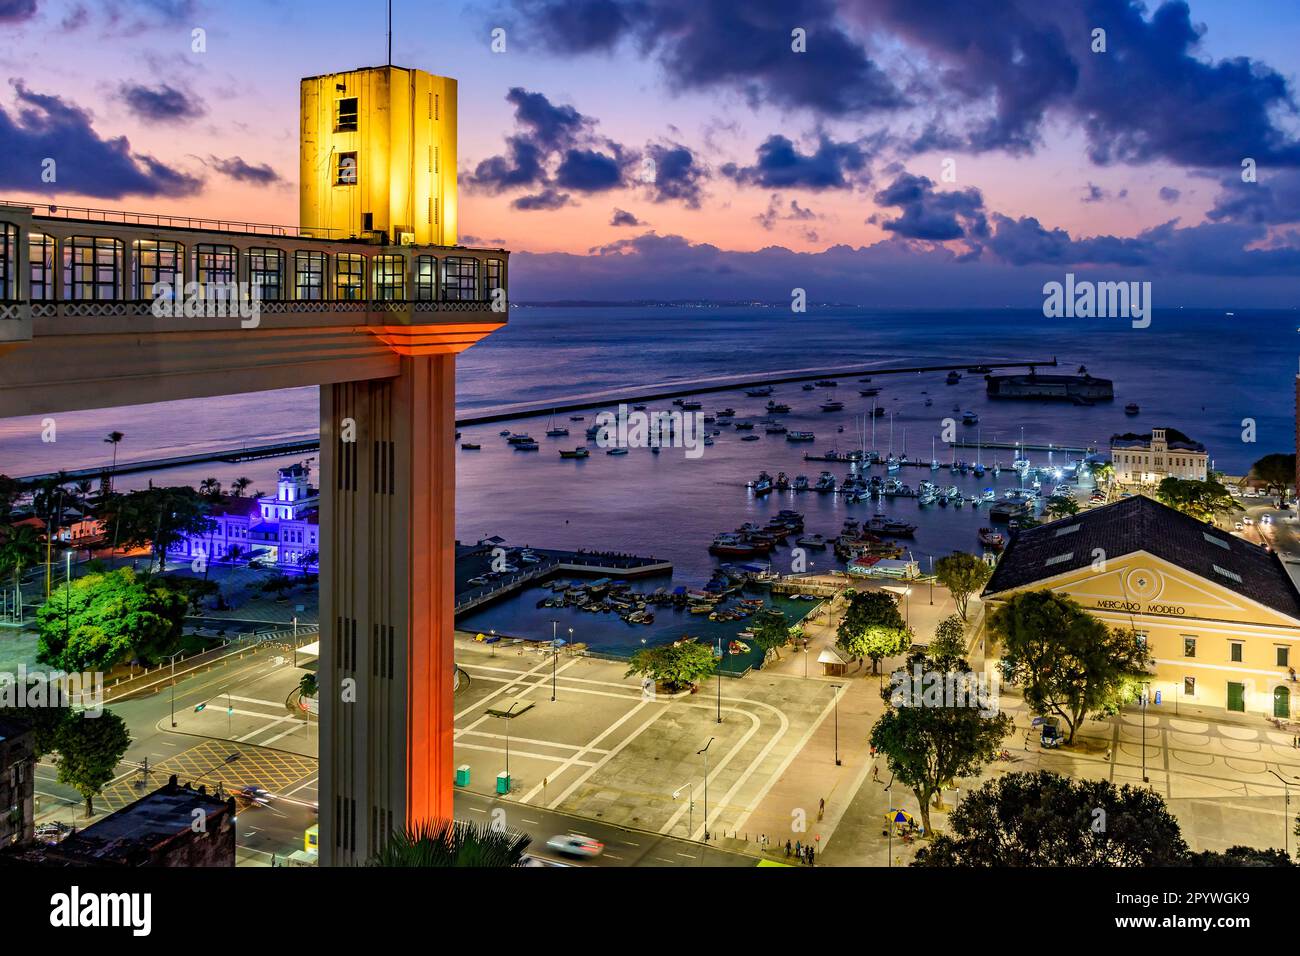 Ascenseur Lacerda illuminé au crépuscule et avec la mer et les bateaux en arrière-plan dans la ville de Salvador, Bahia, Brésil Banque D'Images